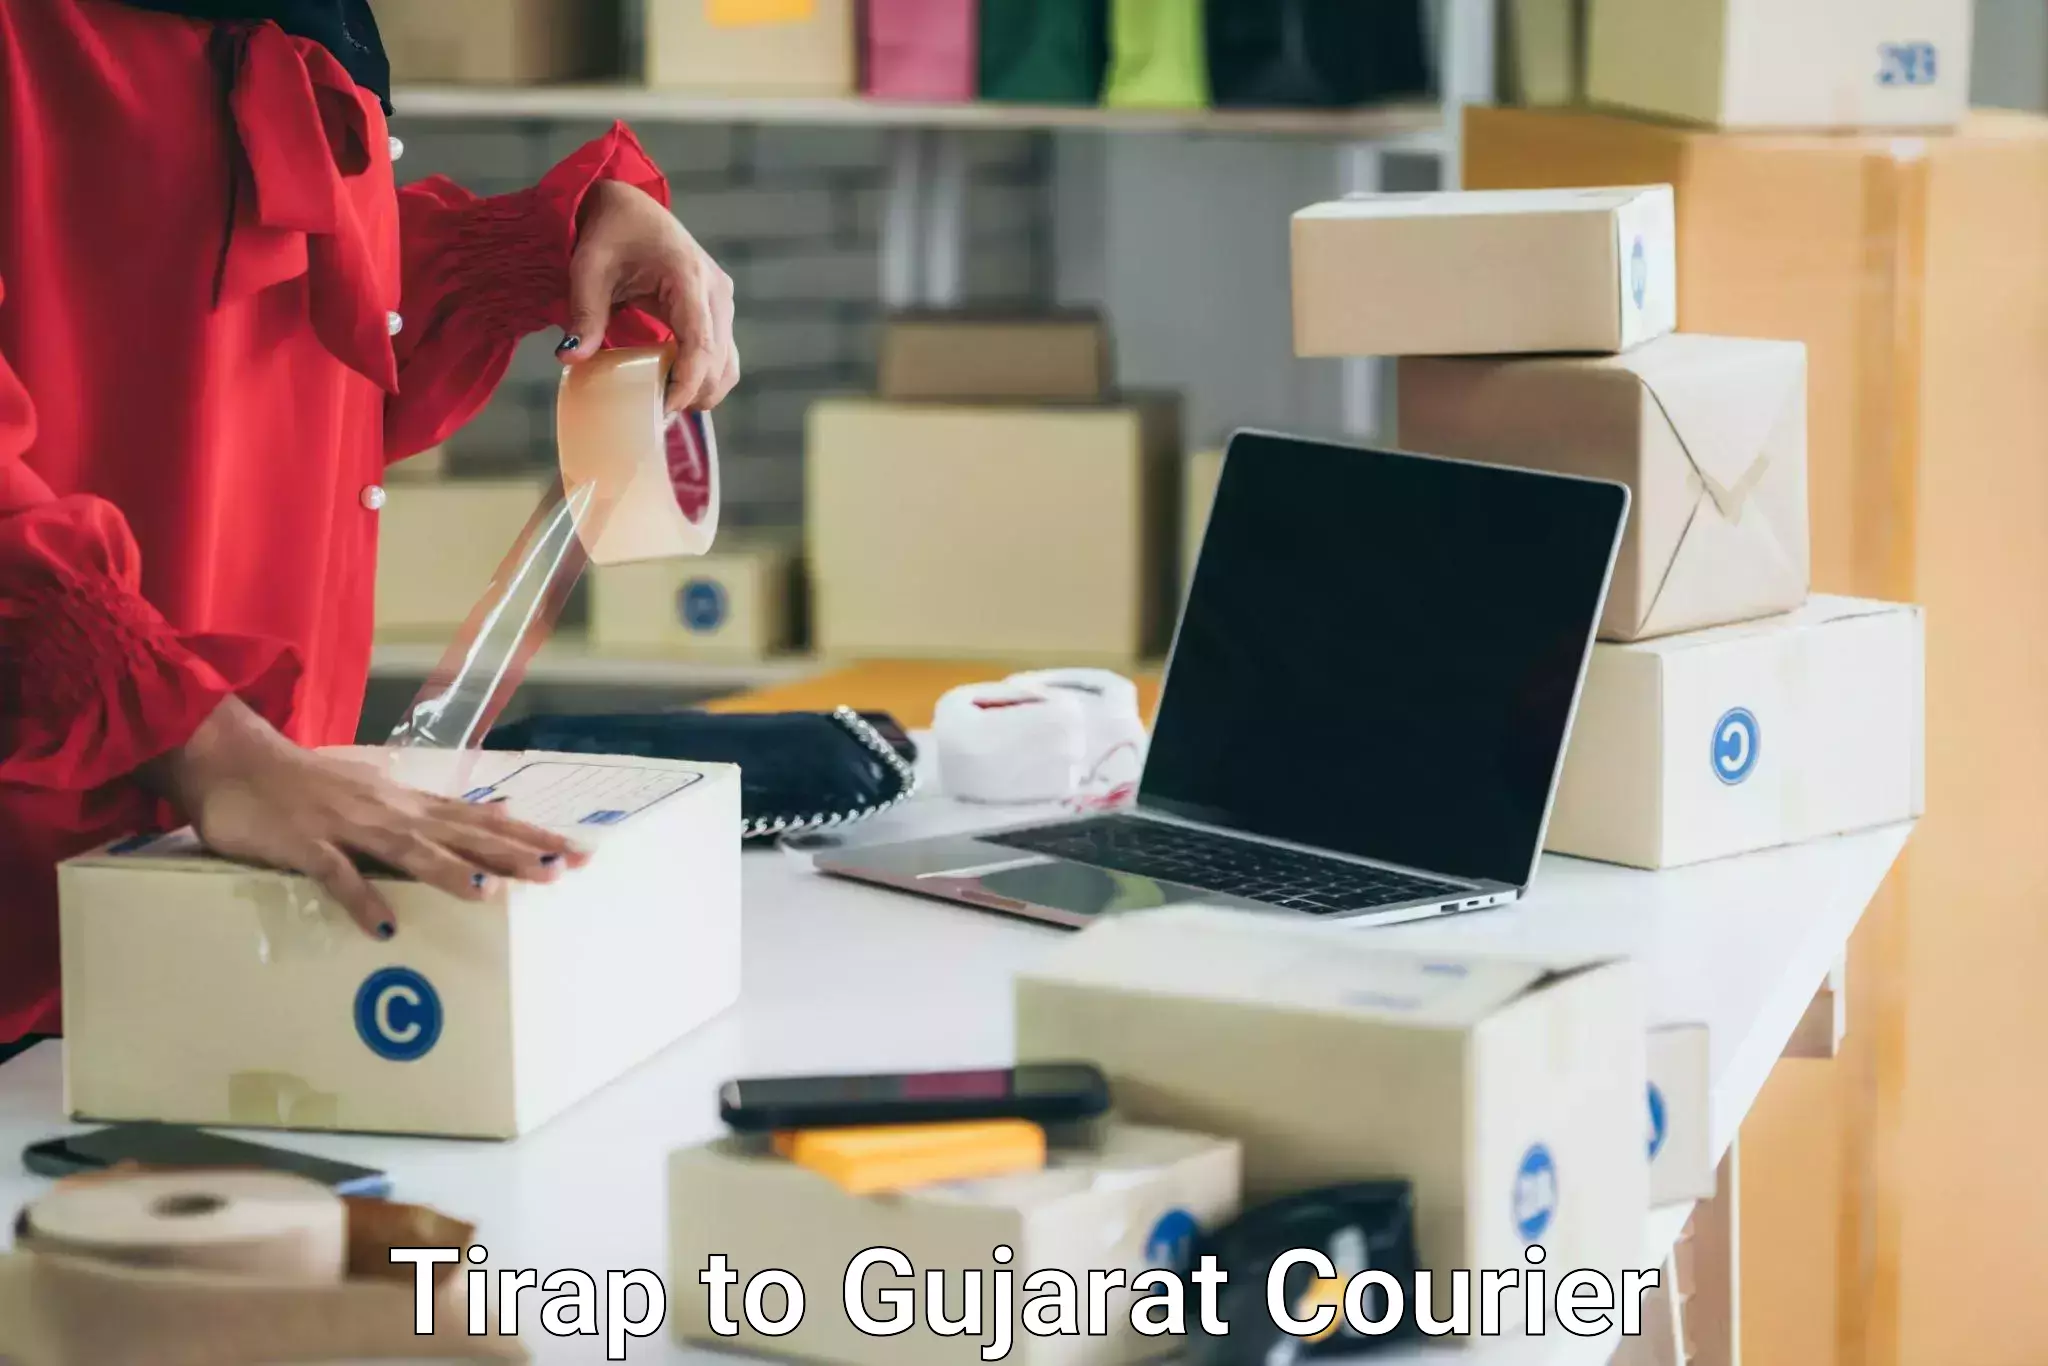 Furniture transport service Tirap to Patan Gujarat